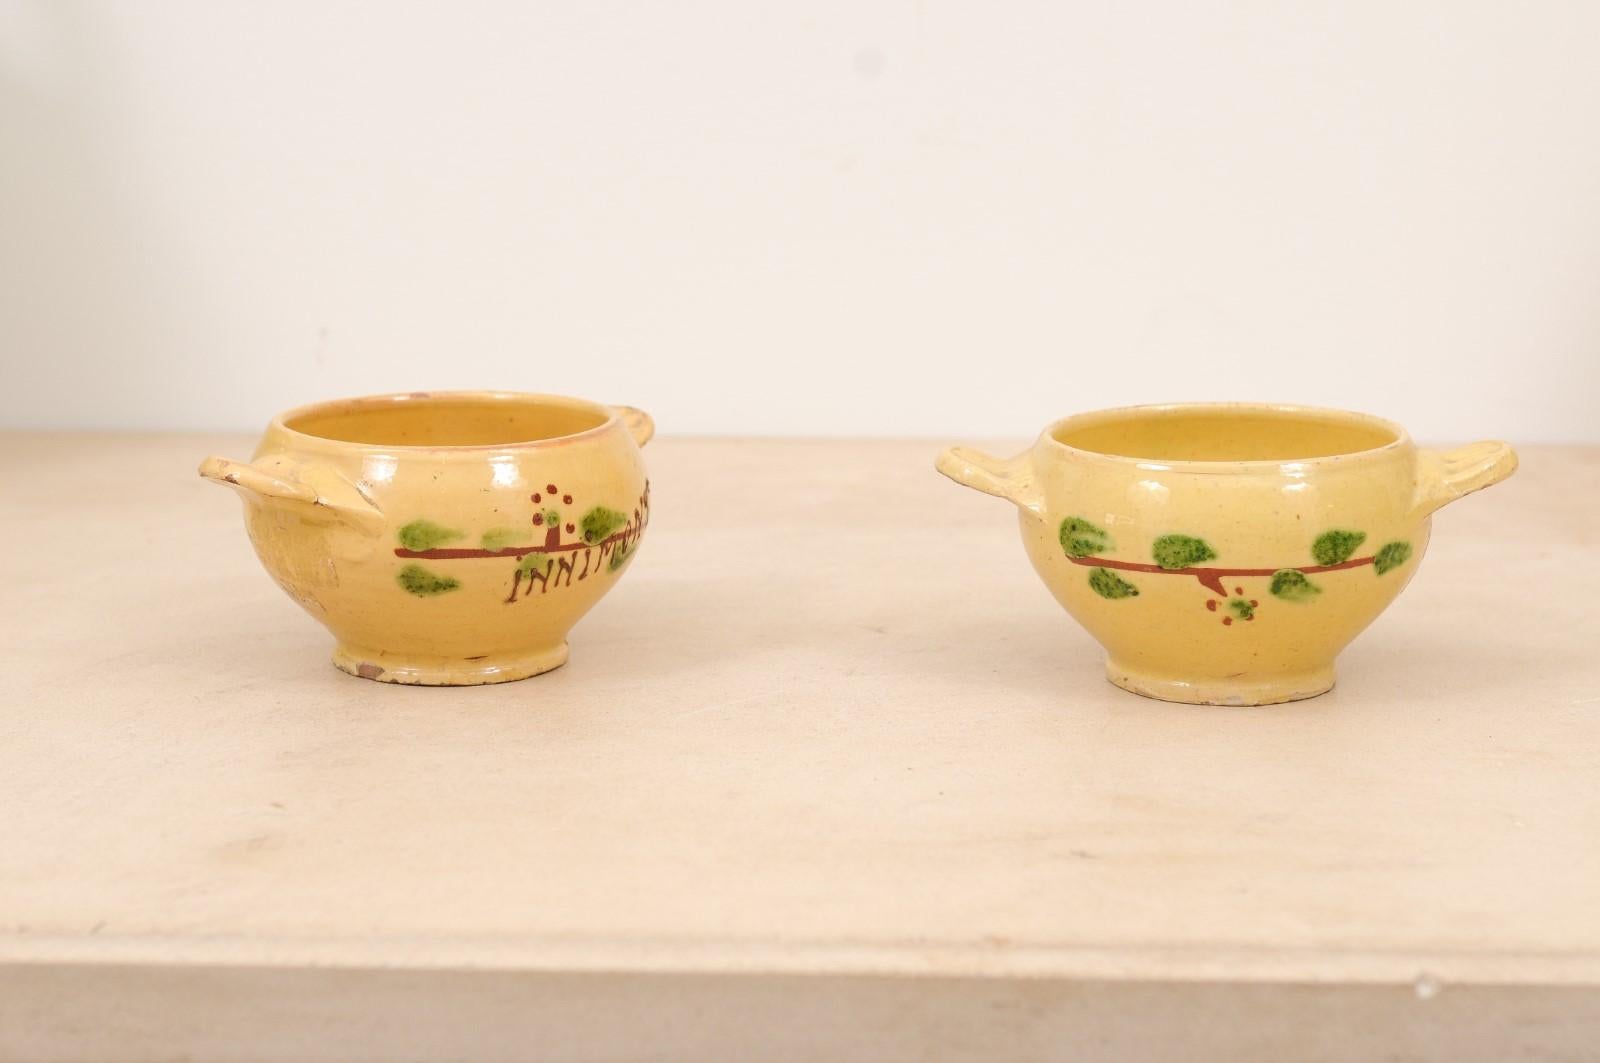 Deux petits bols à boire en poterie à glaçure jaune de la ville d'Innimont, datant du 19e siècle, avec des motifs de feuillage stylisé. Prix et vente séparés : 295 $ chacun. Créés dans l'Est de la France au XIXe siècle et destinés à boire du thé, du